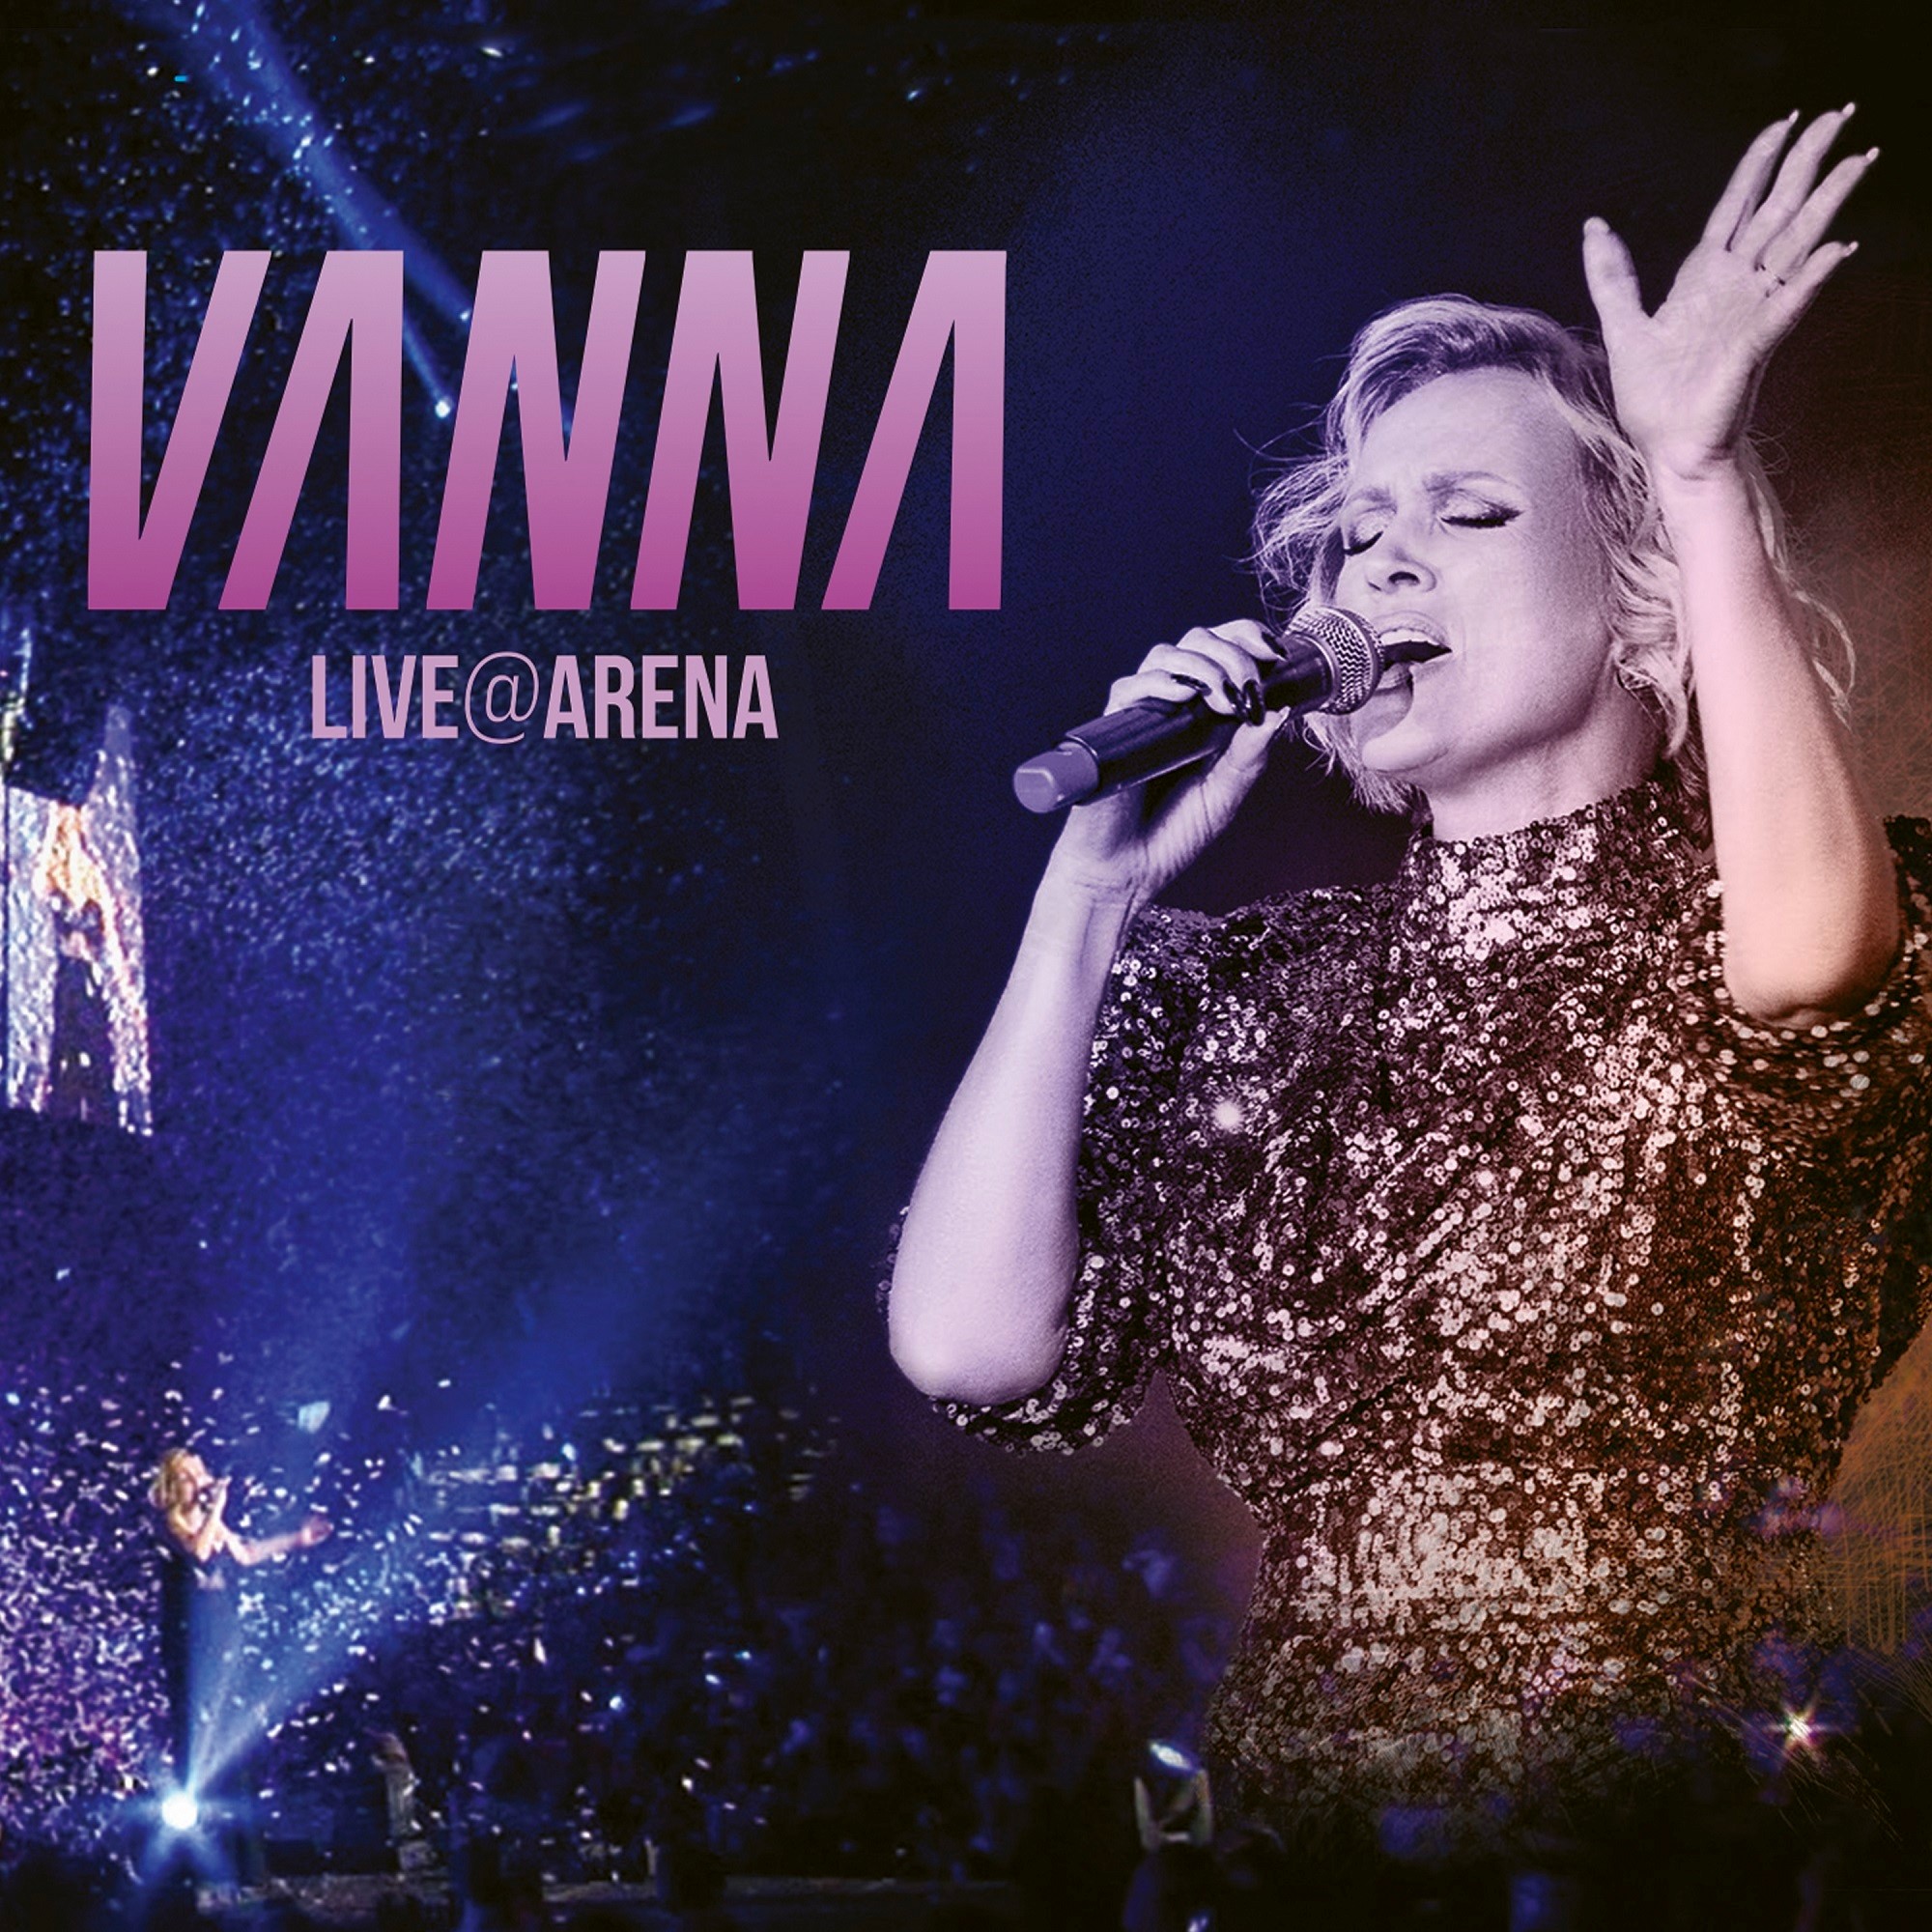 Koncert “Vanna – Live@Arena” od danas na svim digitalnim platformama